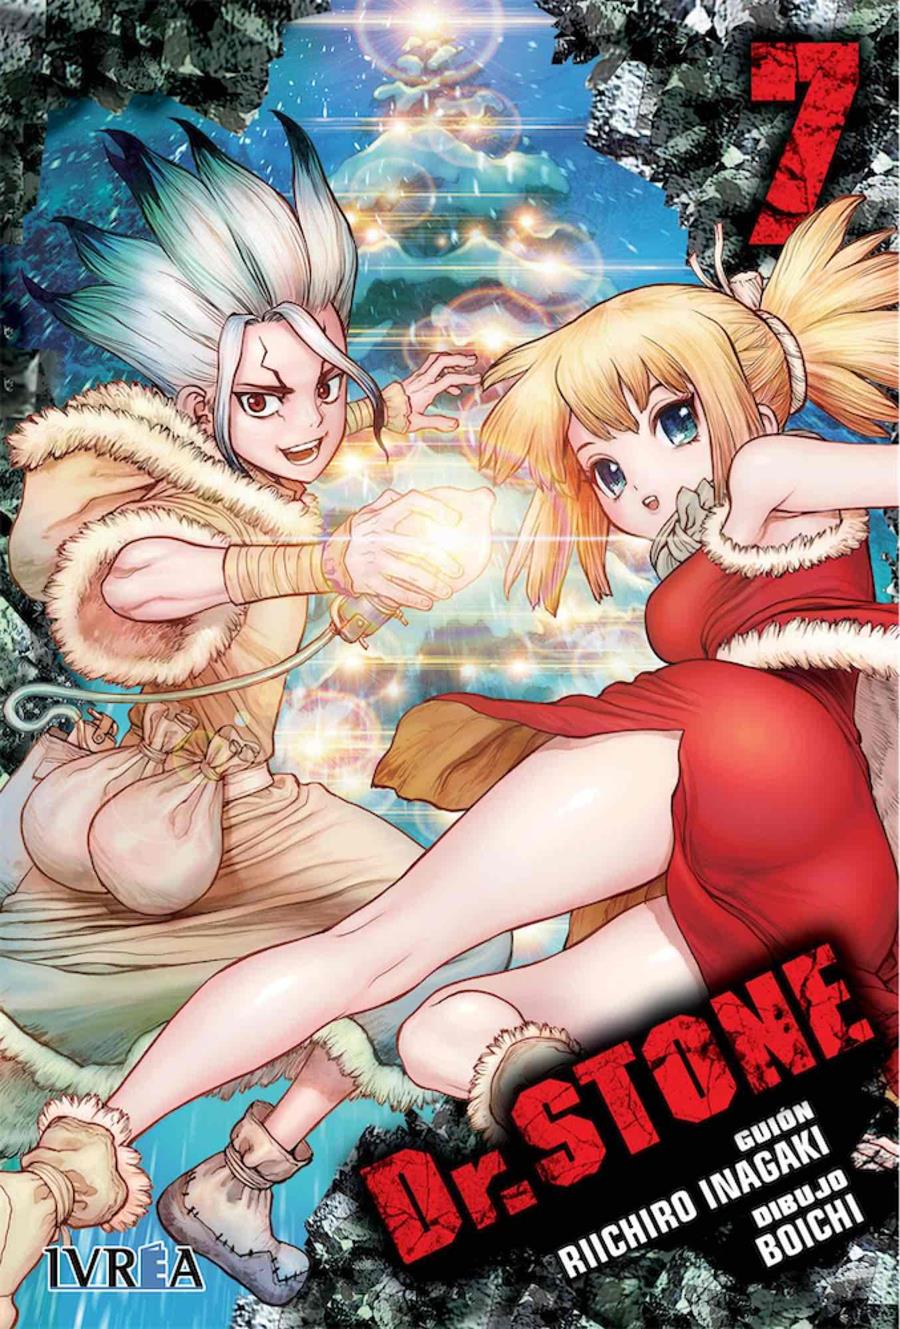 Dr. Stone 07 | N0519-IVR05 | Riichiro Inagaki, Boichi | Terra de Còmic - Tu tienda de cómics online especializada en cómics, manga y merchandising